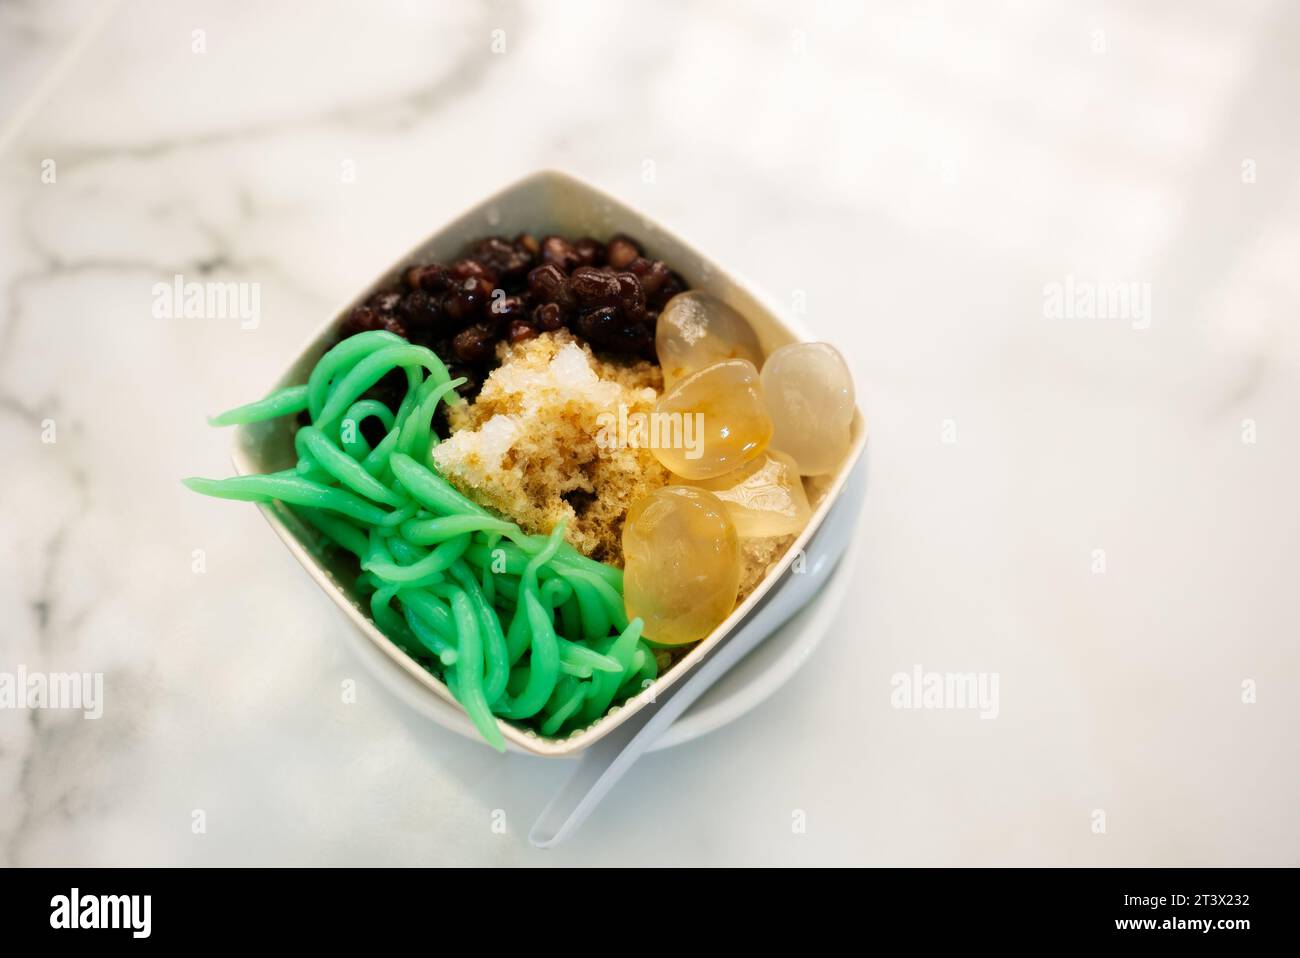 Air batu Campus, Ice Kachang, ein farbenfrohes malaysisches Dessert aus geschliffenem Eis, Bohnen und buntem Gelee, mit zusätzlichem Cendol. Es ist in Singapur beliebt Stockfoto